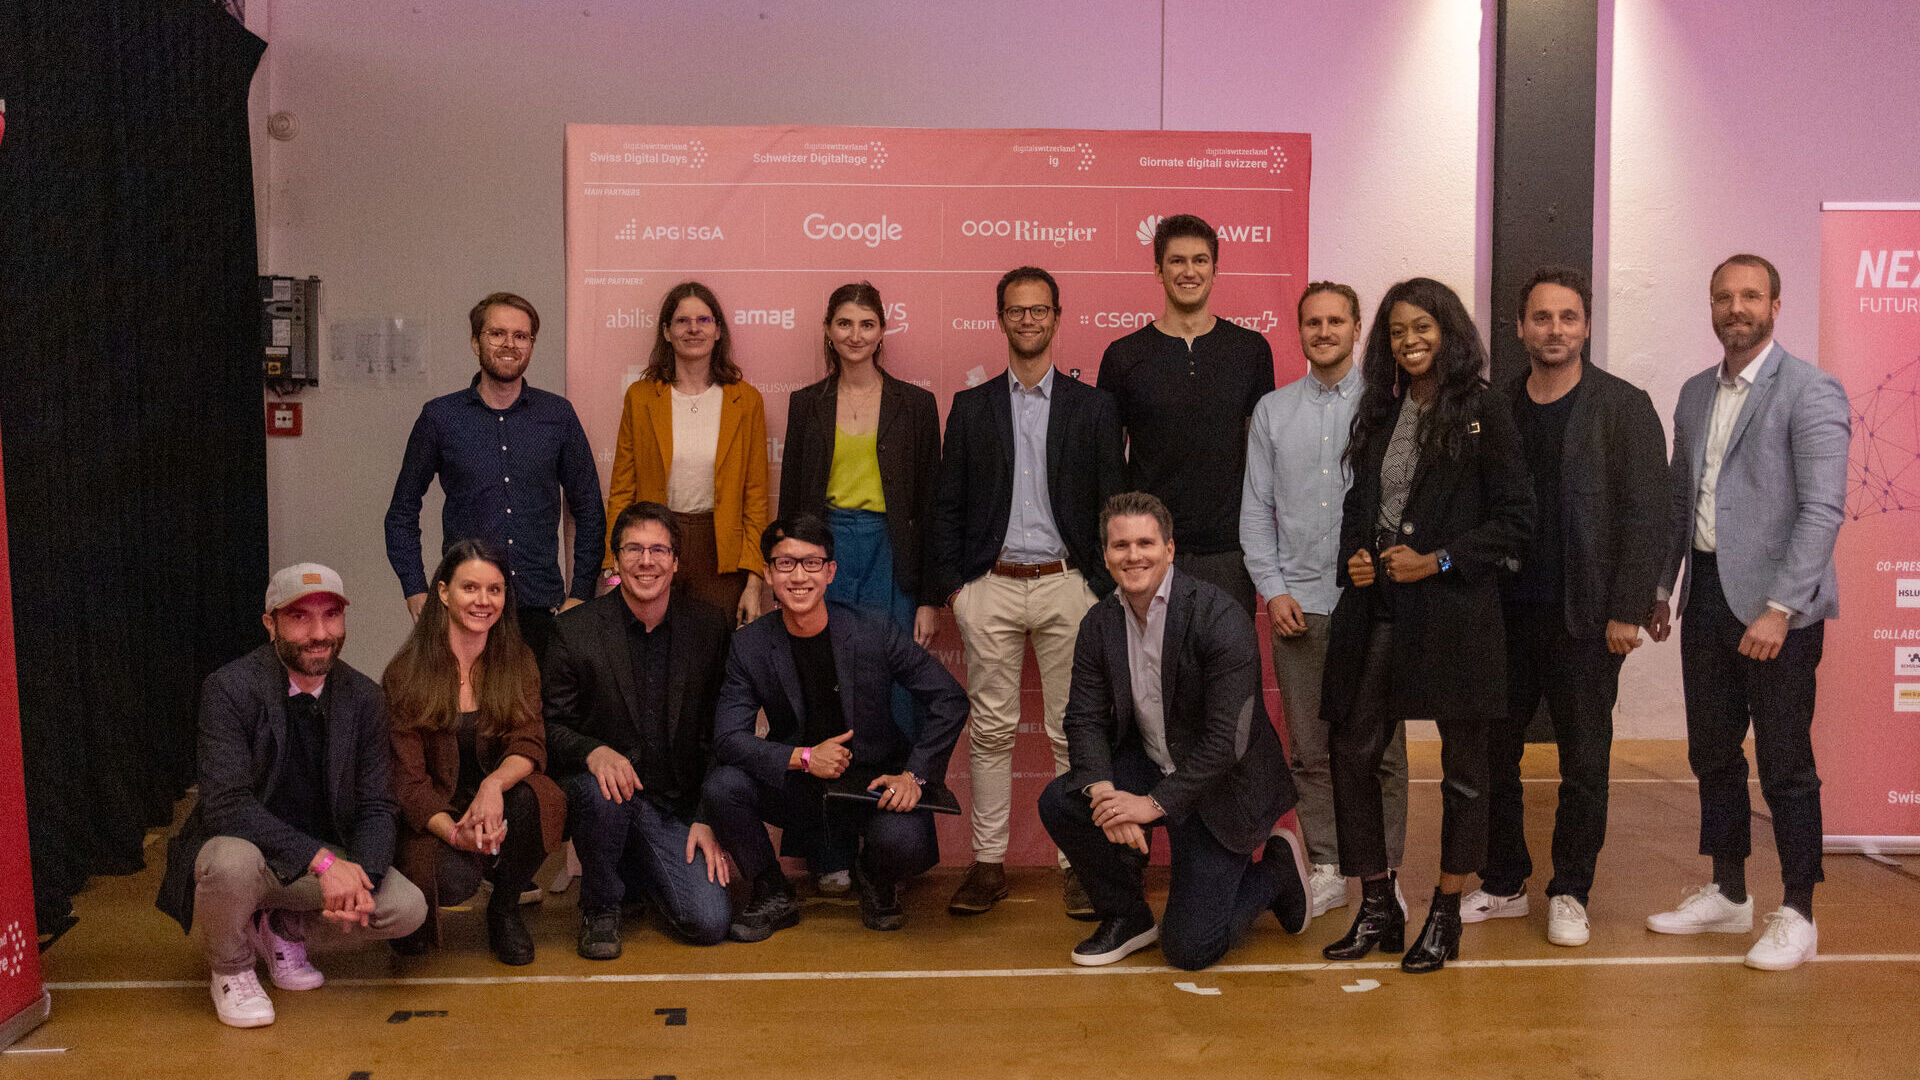 Շվեյցարական թվային օրեր. 2022 թվականի «Շվեյցարական թվային օրերի» եզրափակիչ միջոցառումը Ցուգի (Ցուգ) Ֆրեյրուումում հոկտեմբերի 27-ին. «Greentech Startup Battle» նախաձեռնության մրցանակաբաշխությունը viboo-ի հաղթանակով։